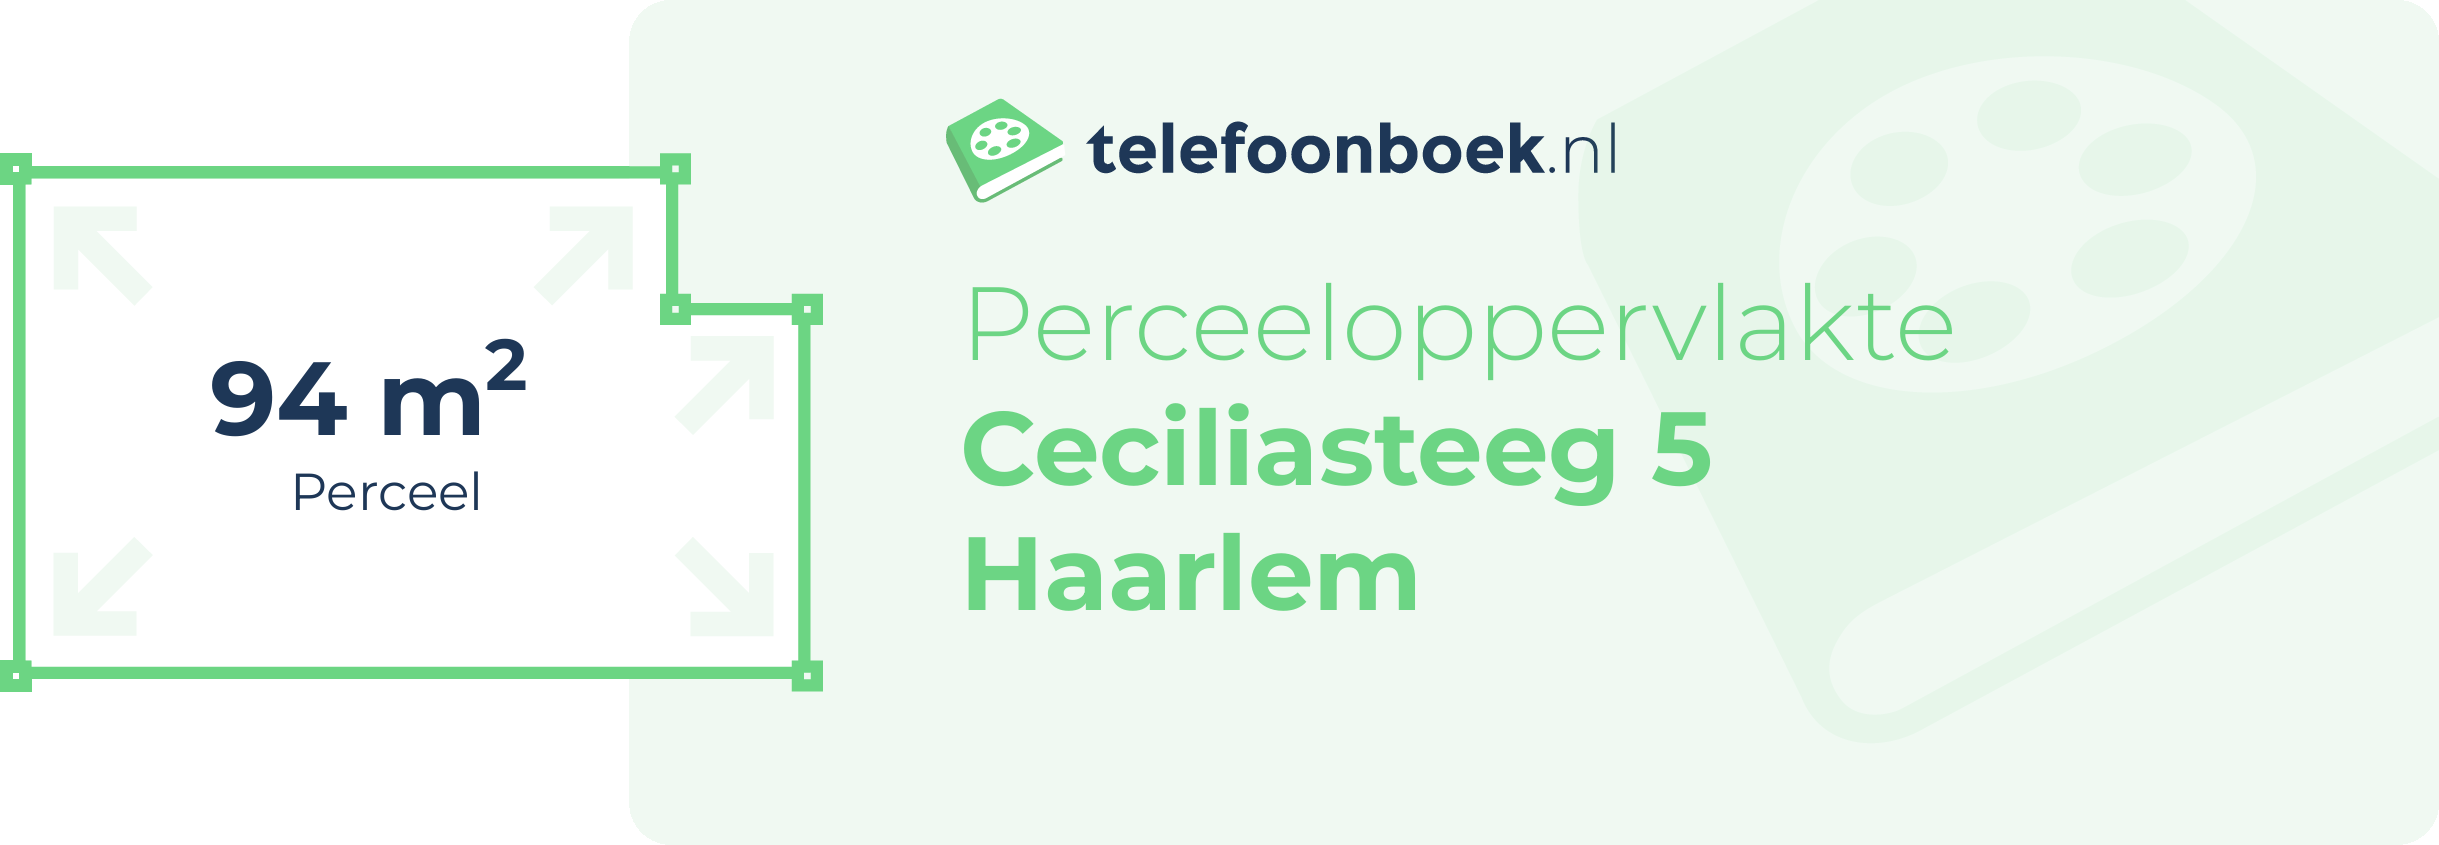 Perceeloppervlakte Ceciliasteeg 5 Haarlem